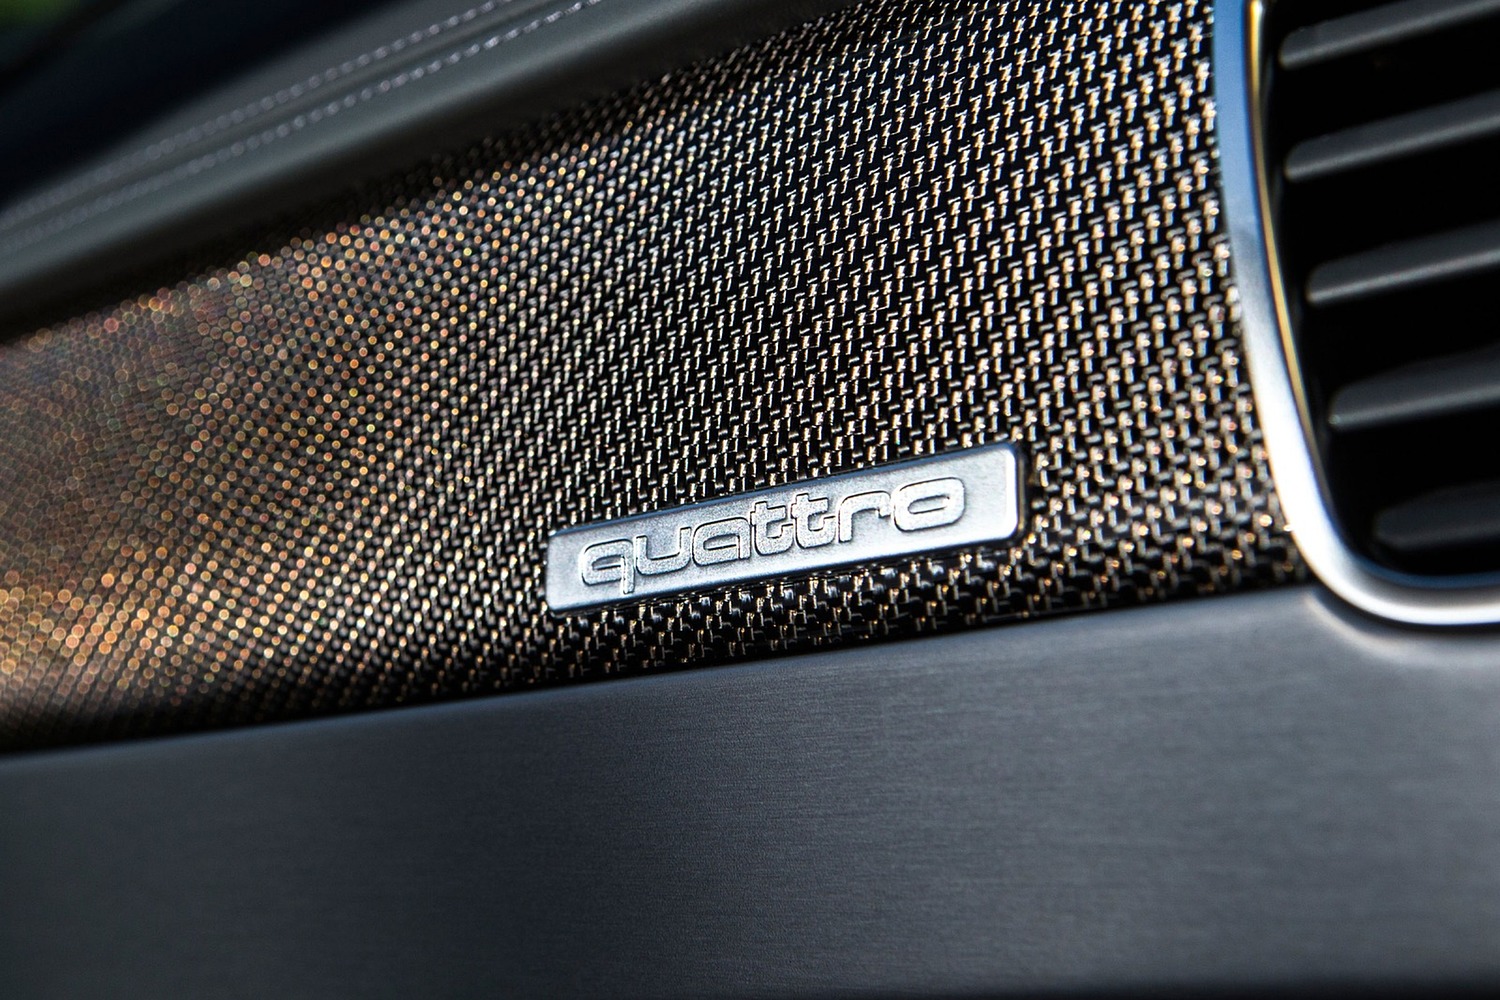 Audi S8 plus quattro Sedan Interior Detail (2017 model year shown)